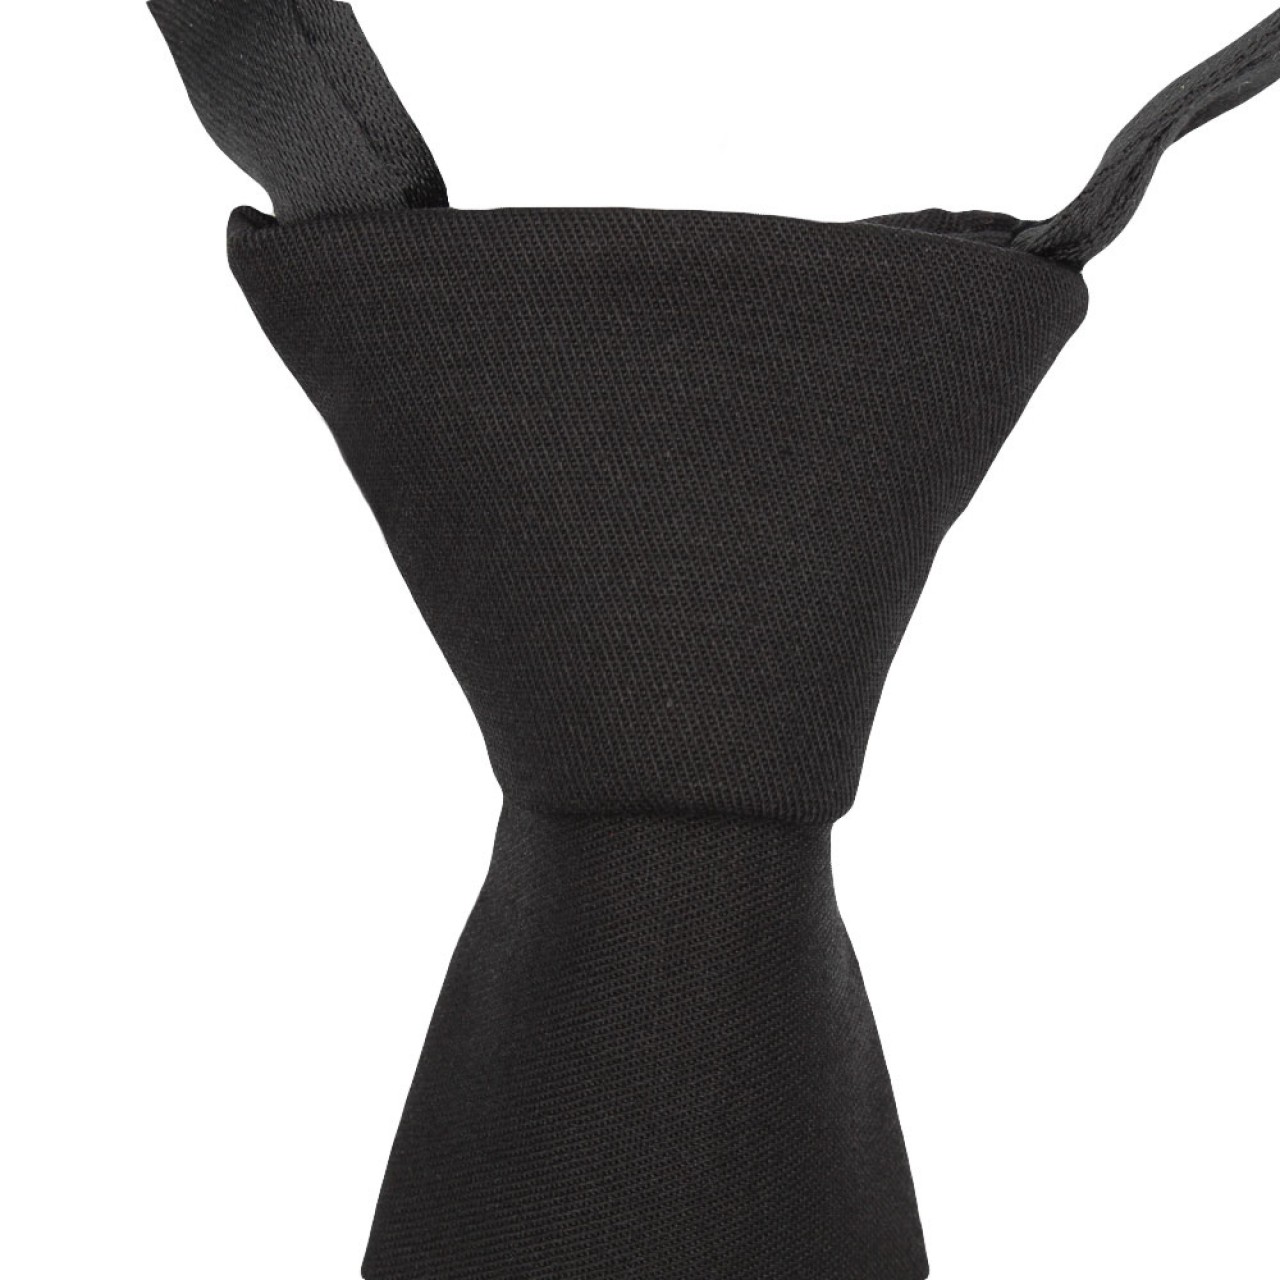 Χειροποίητη Νεανική Ανδρική Γραβάτα 6cm- Ματ Μαύρη Με Έτοιμο Κόμπο